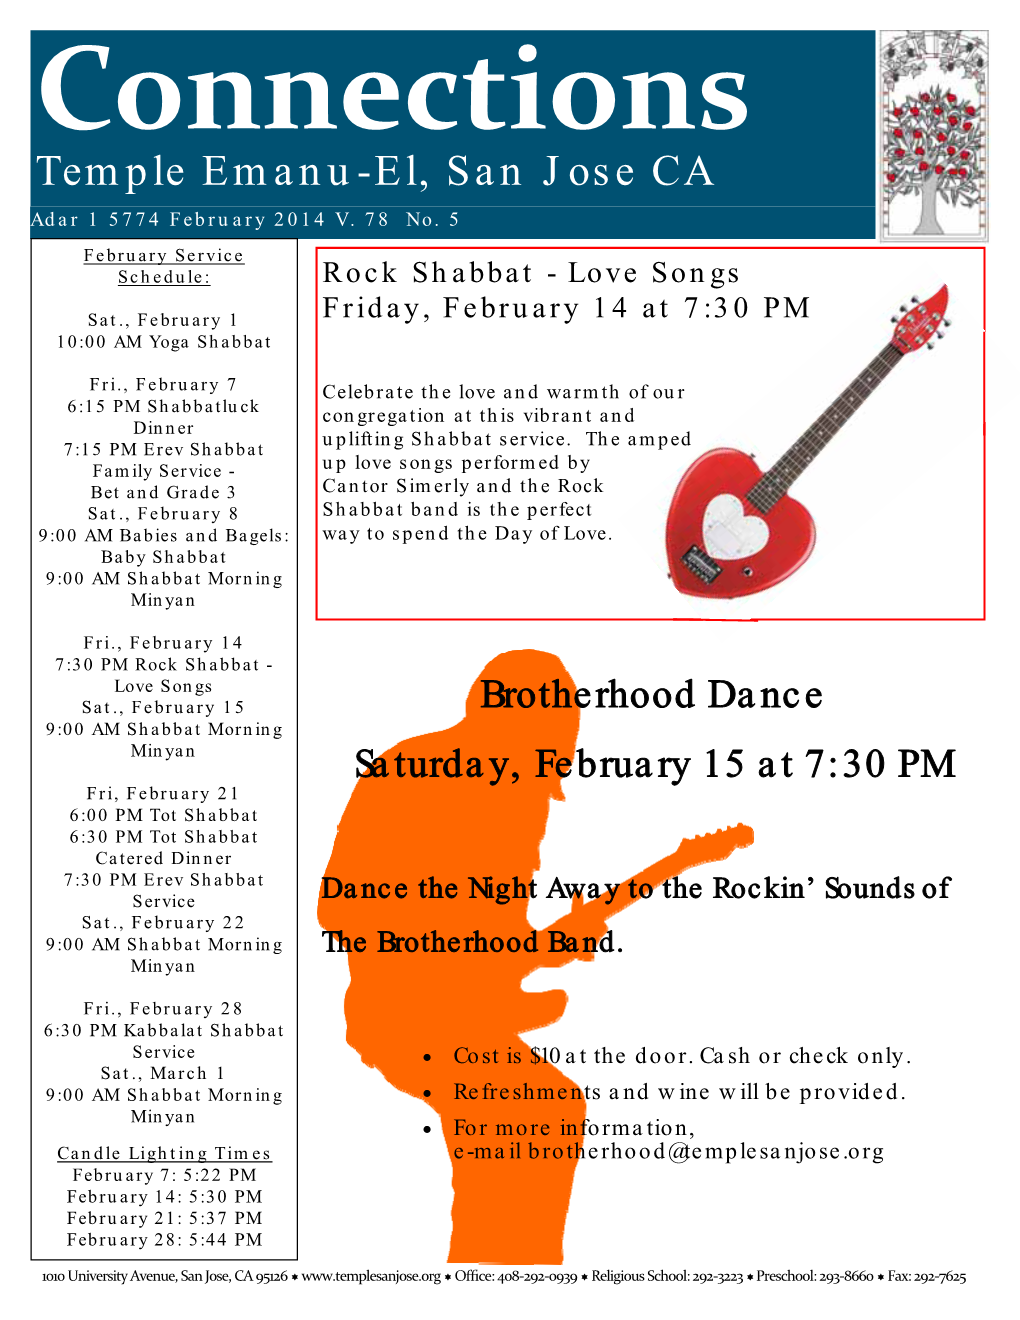 Temple Emanu-El, San Jose CA Adar 1 5774 February 2014 V